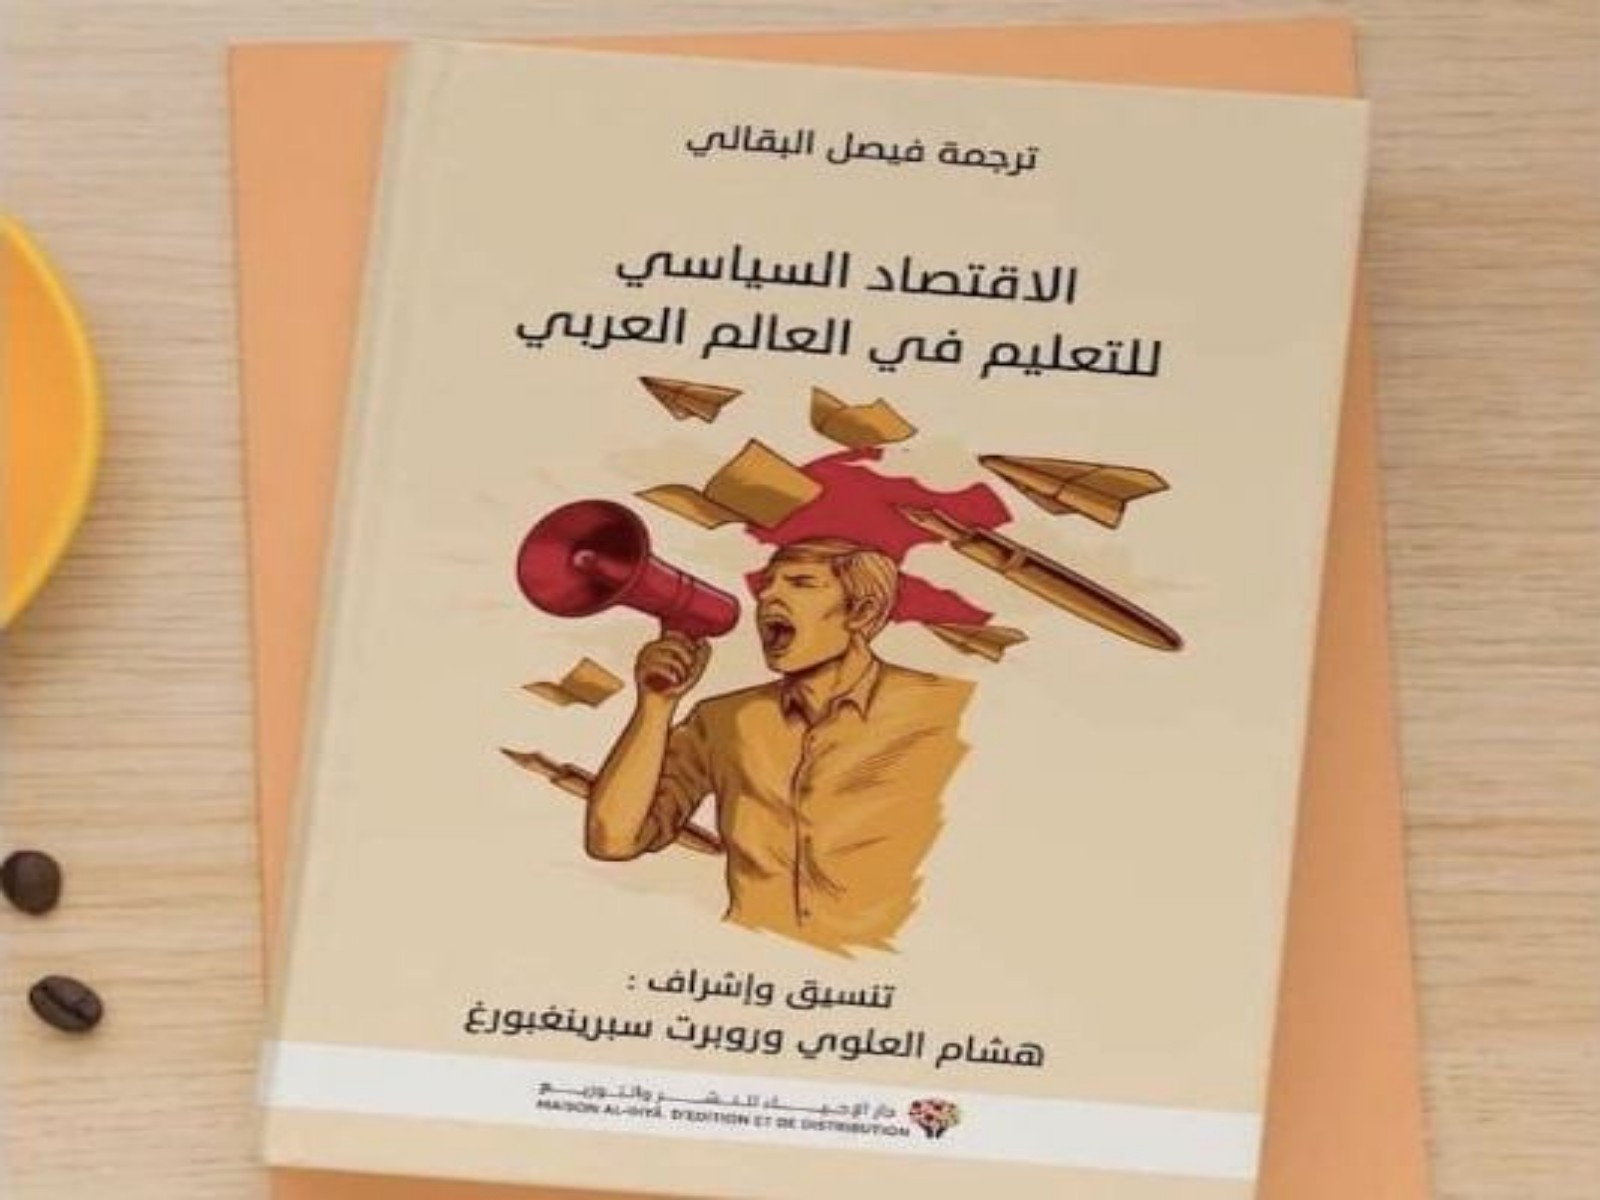 تقديم كتاب: “الاقتصاد السياسي للتعليم في العالم العربي”